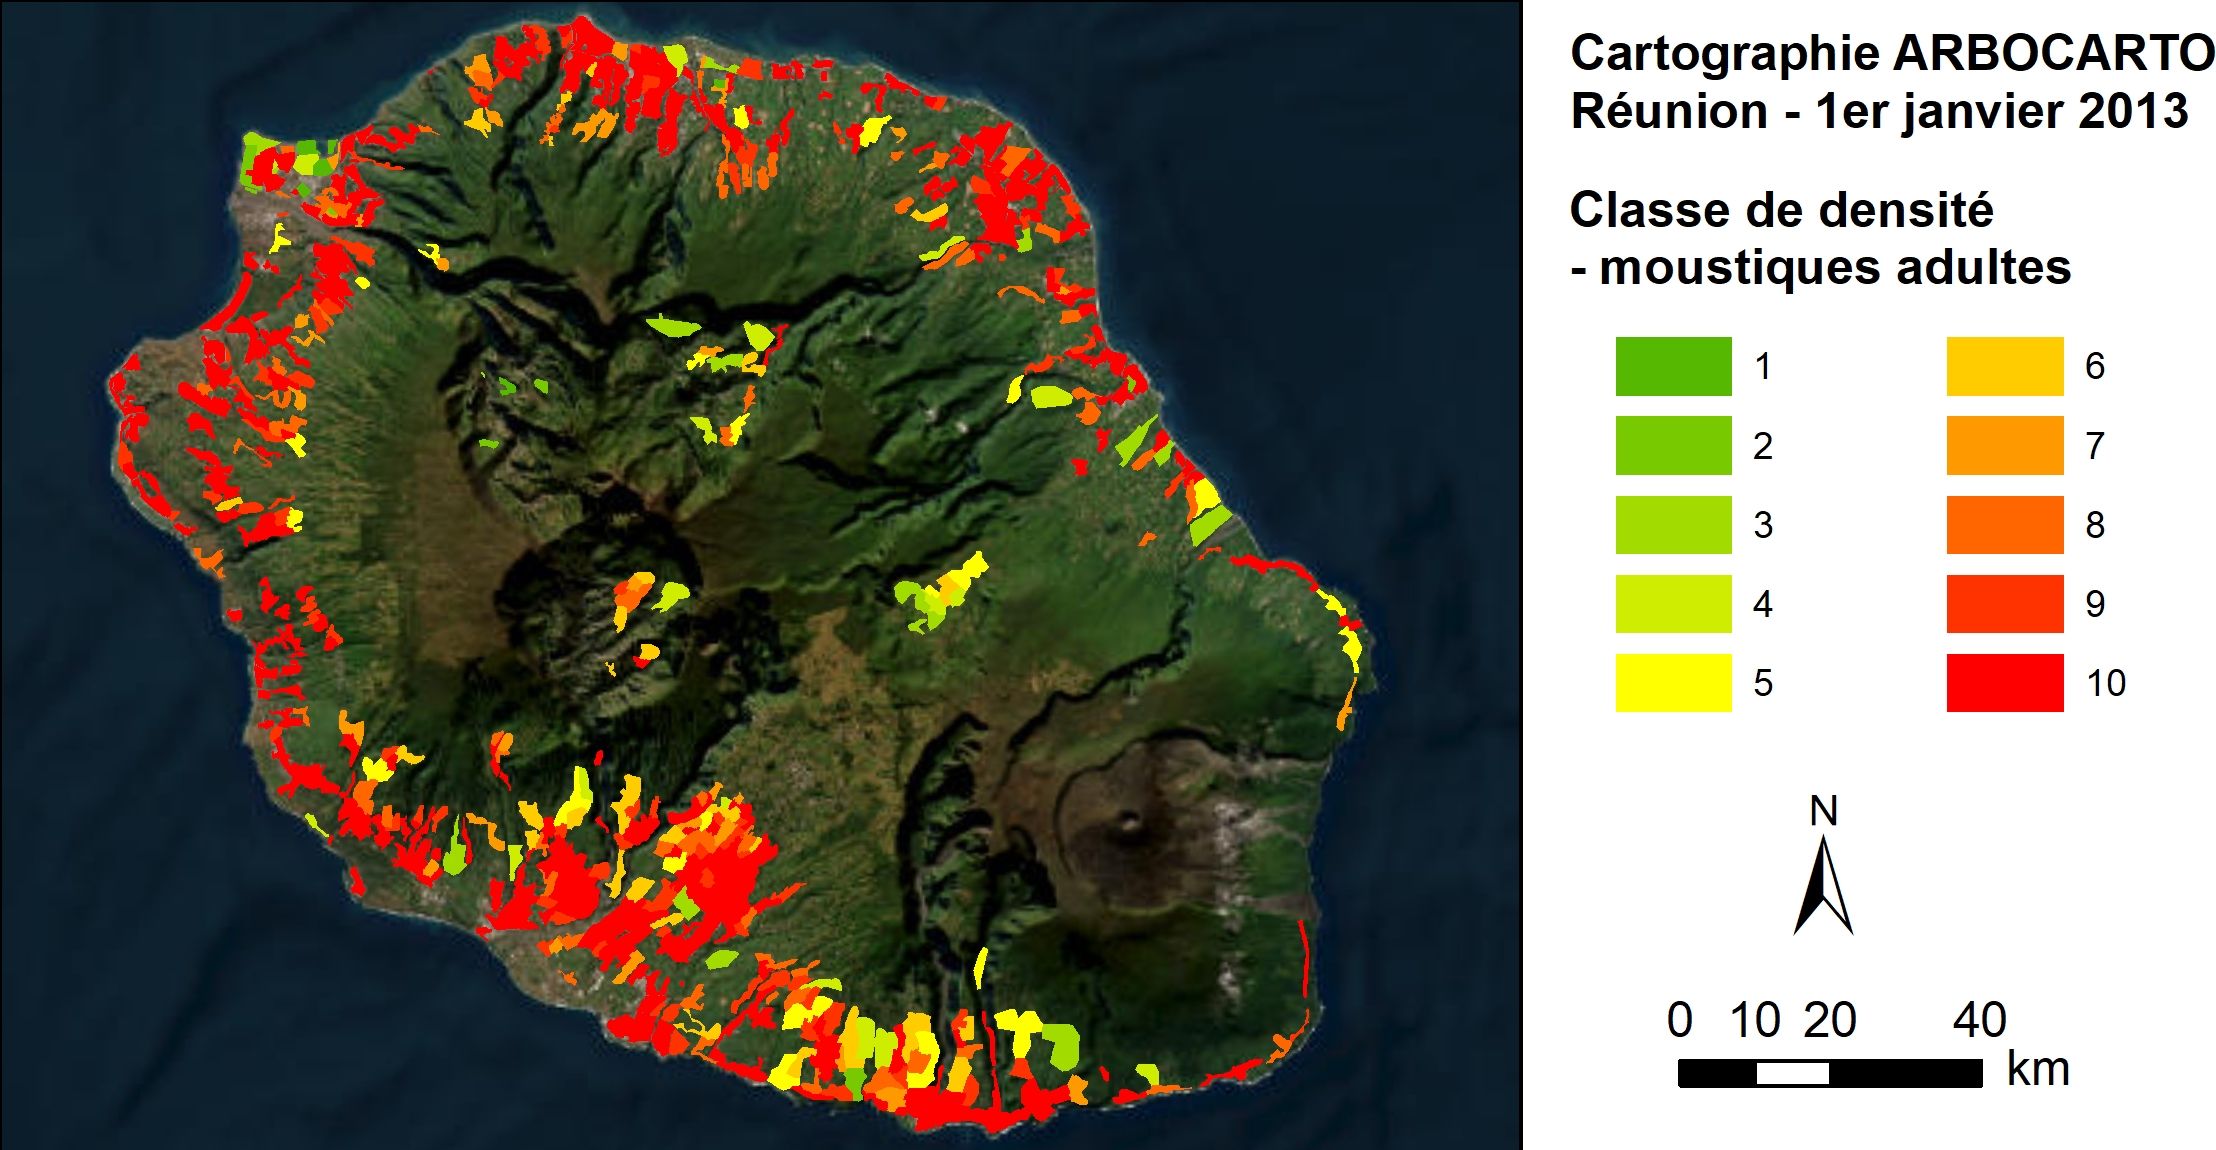 Exemple de sortie de l’outil ARBOCARTO. Simulation des densités de moustiques adultes Aedes albopictus, site de La Réunion, janvier 2013. Du vert, zones à faible densité, au rouge, zones à densité élevée.